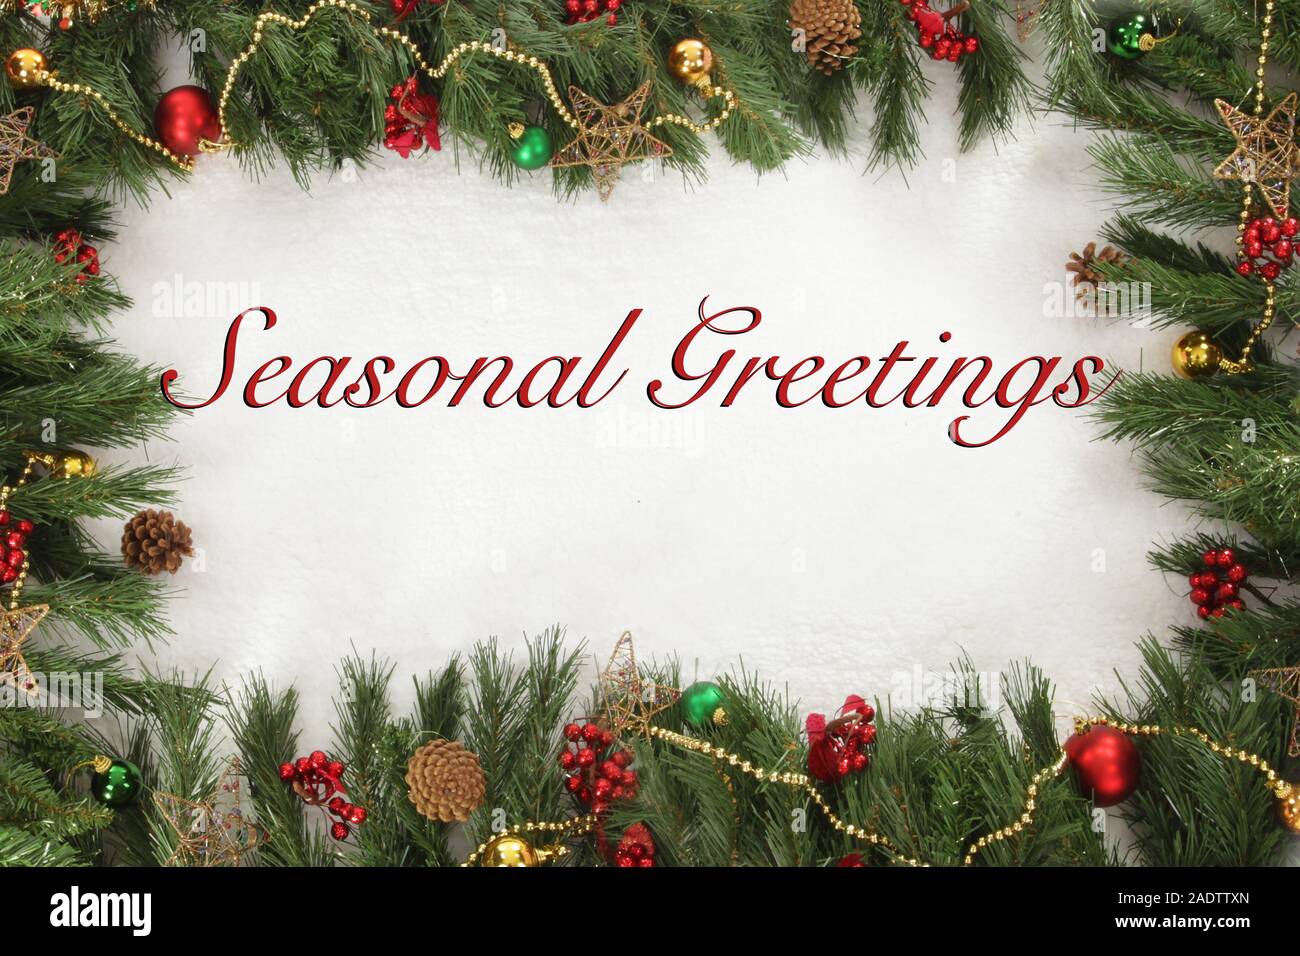 Christmas,  Seasonal greetings sign Stock Photo